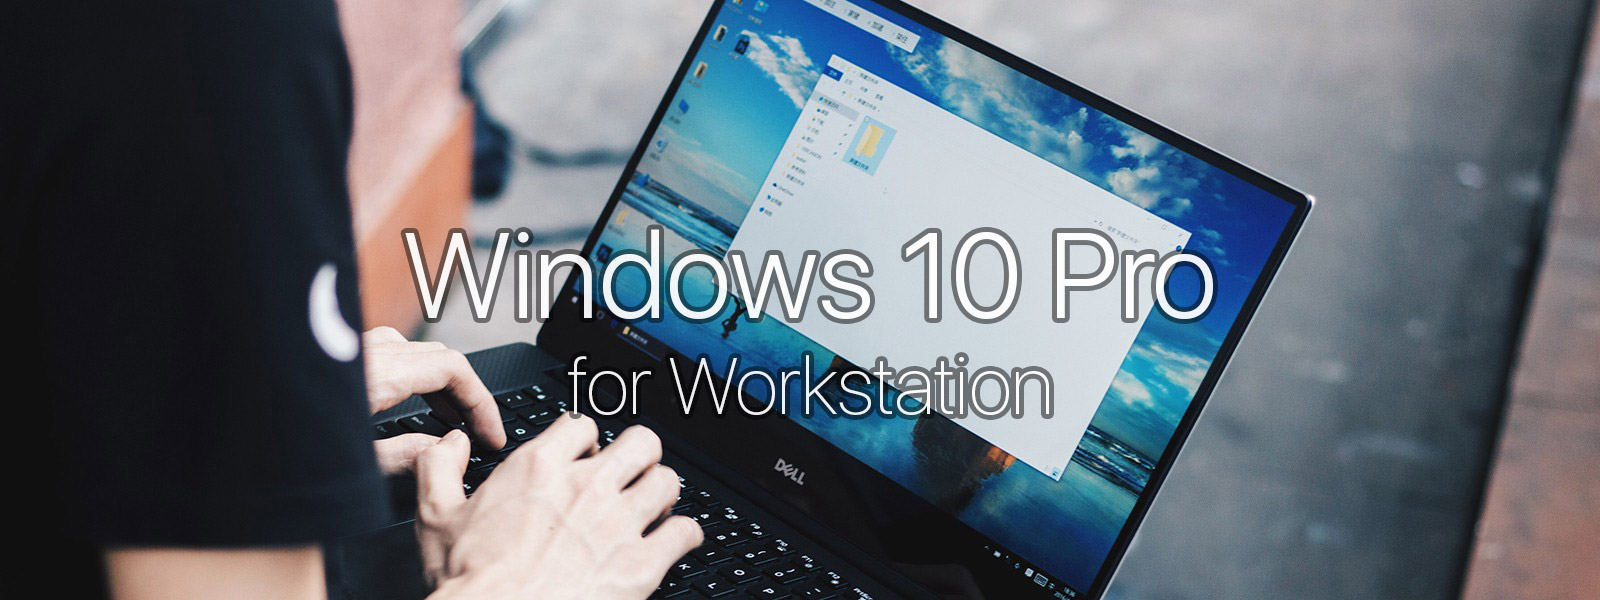 Windows 10 Pro for Workstations: cúp điện vẫn không mất dữ liệu RAM, gắn tối đa 4 CPU + 6TB RAM